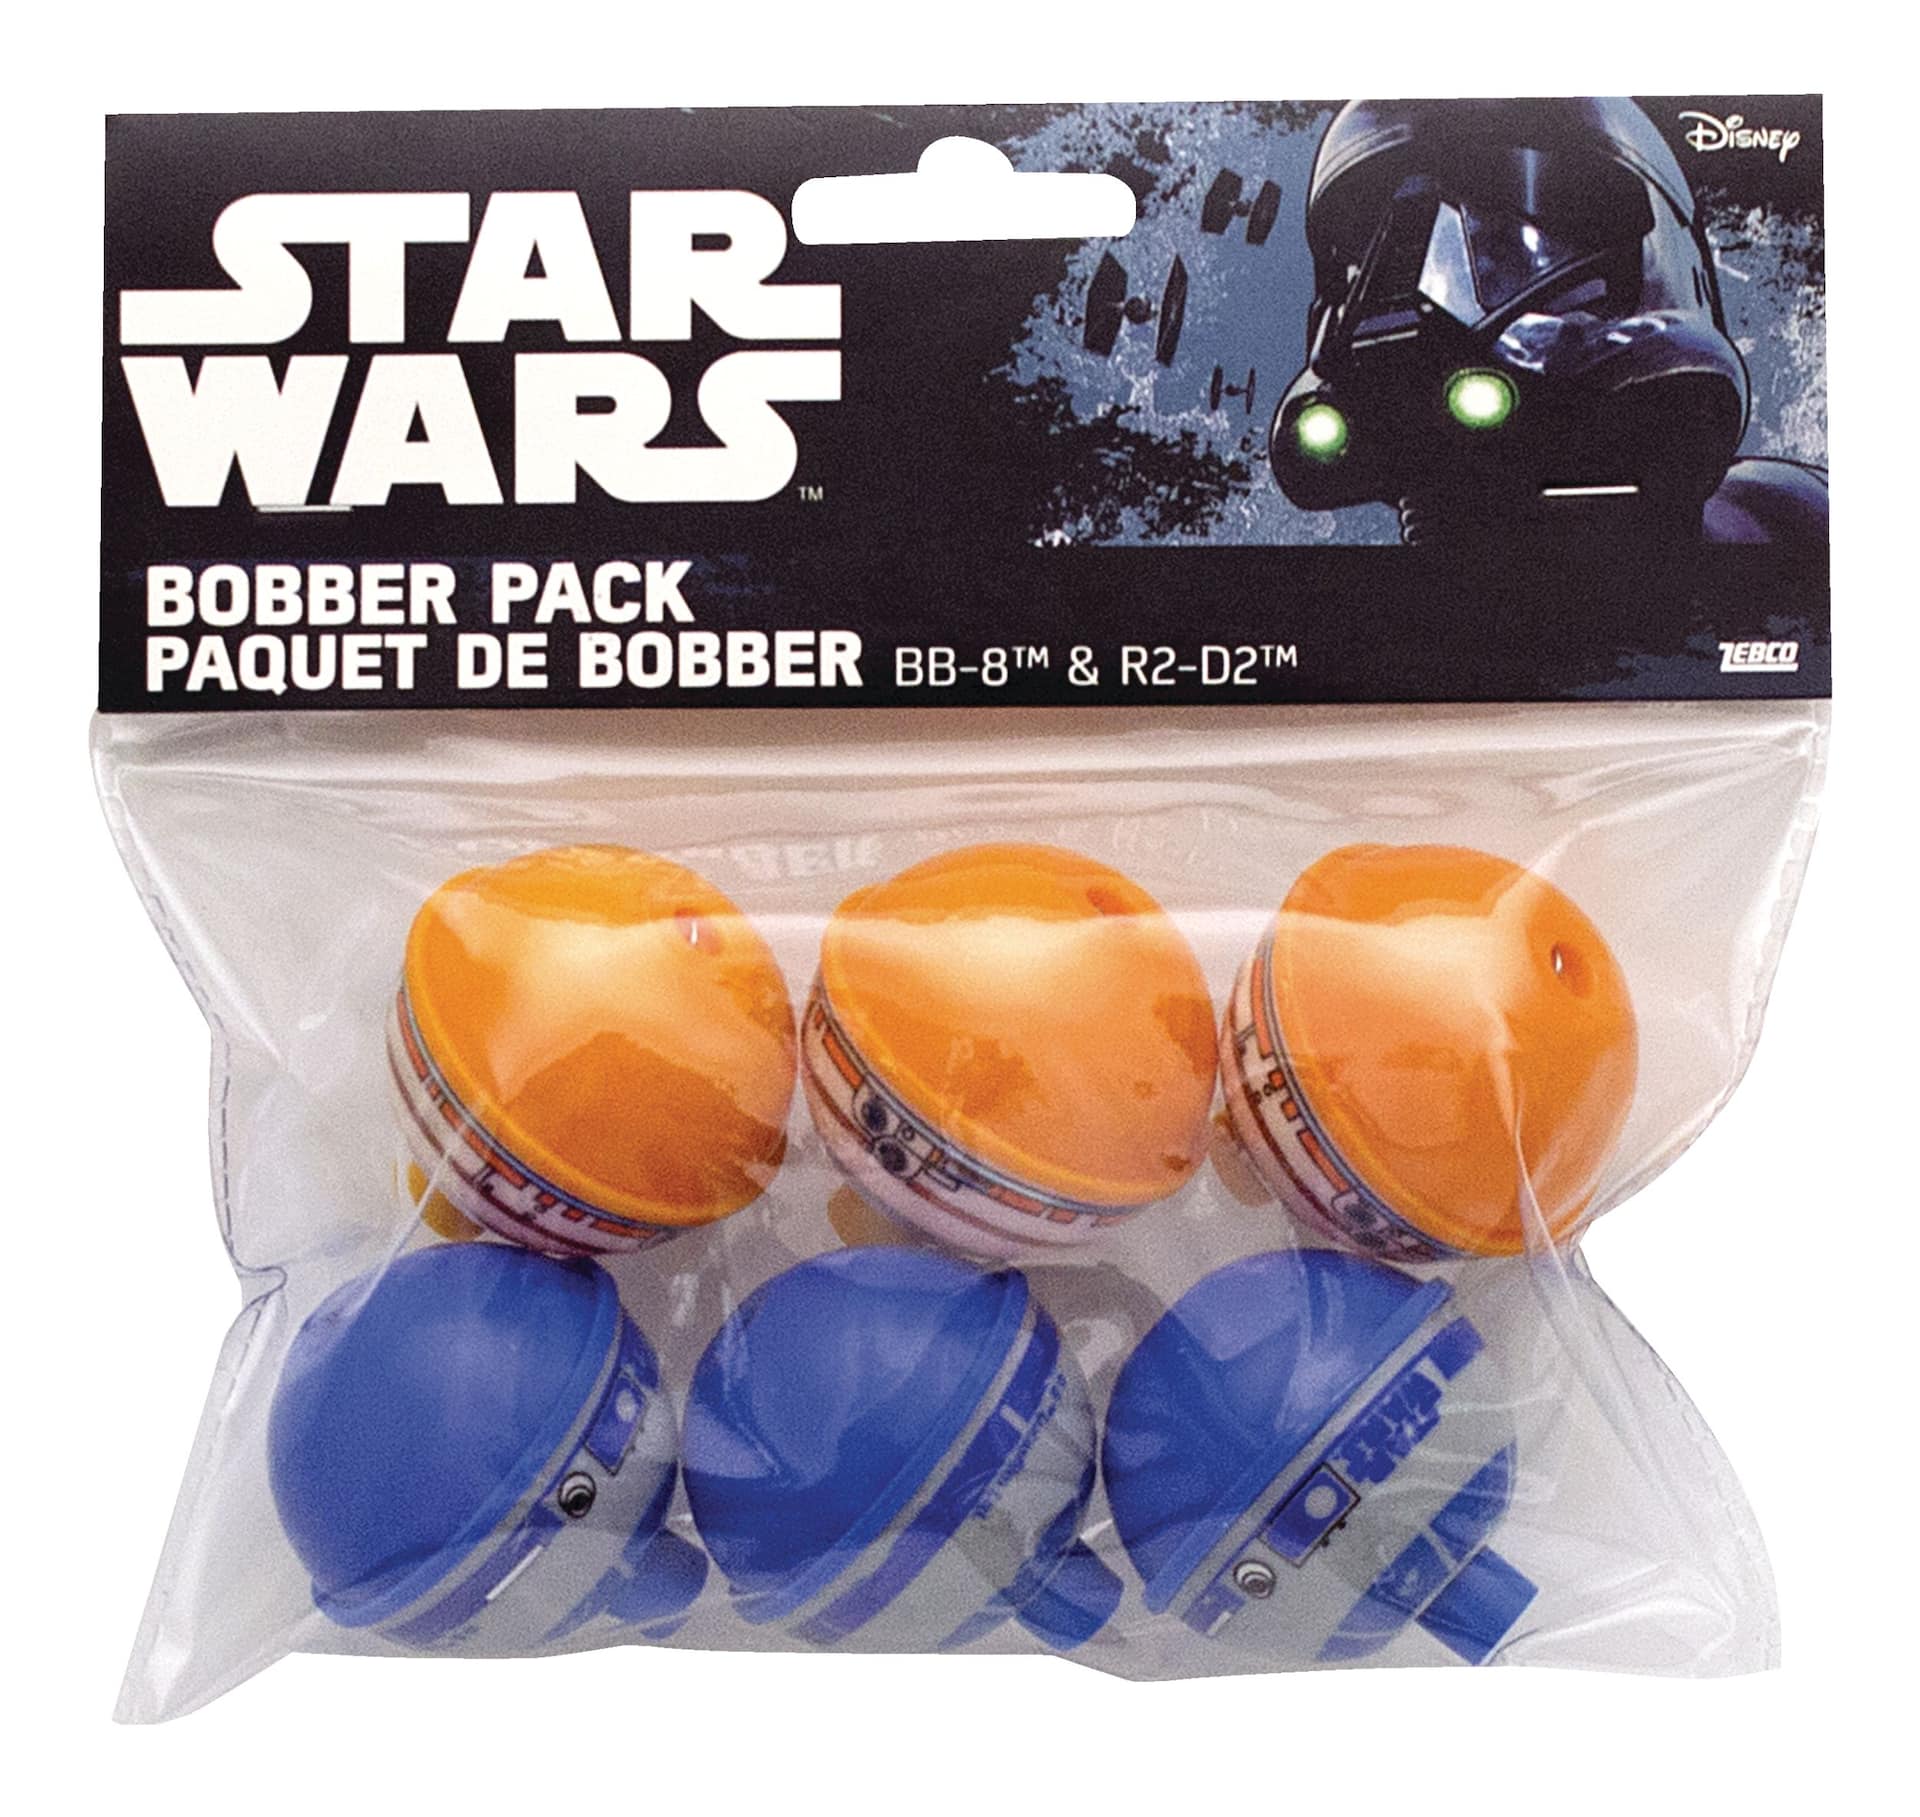 Star Wars Bobber Pack, 6-pk